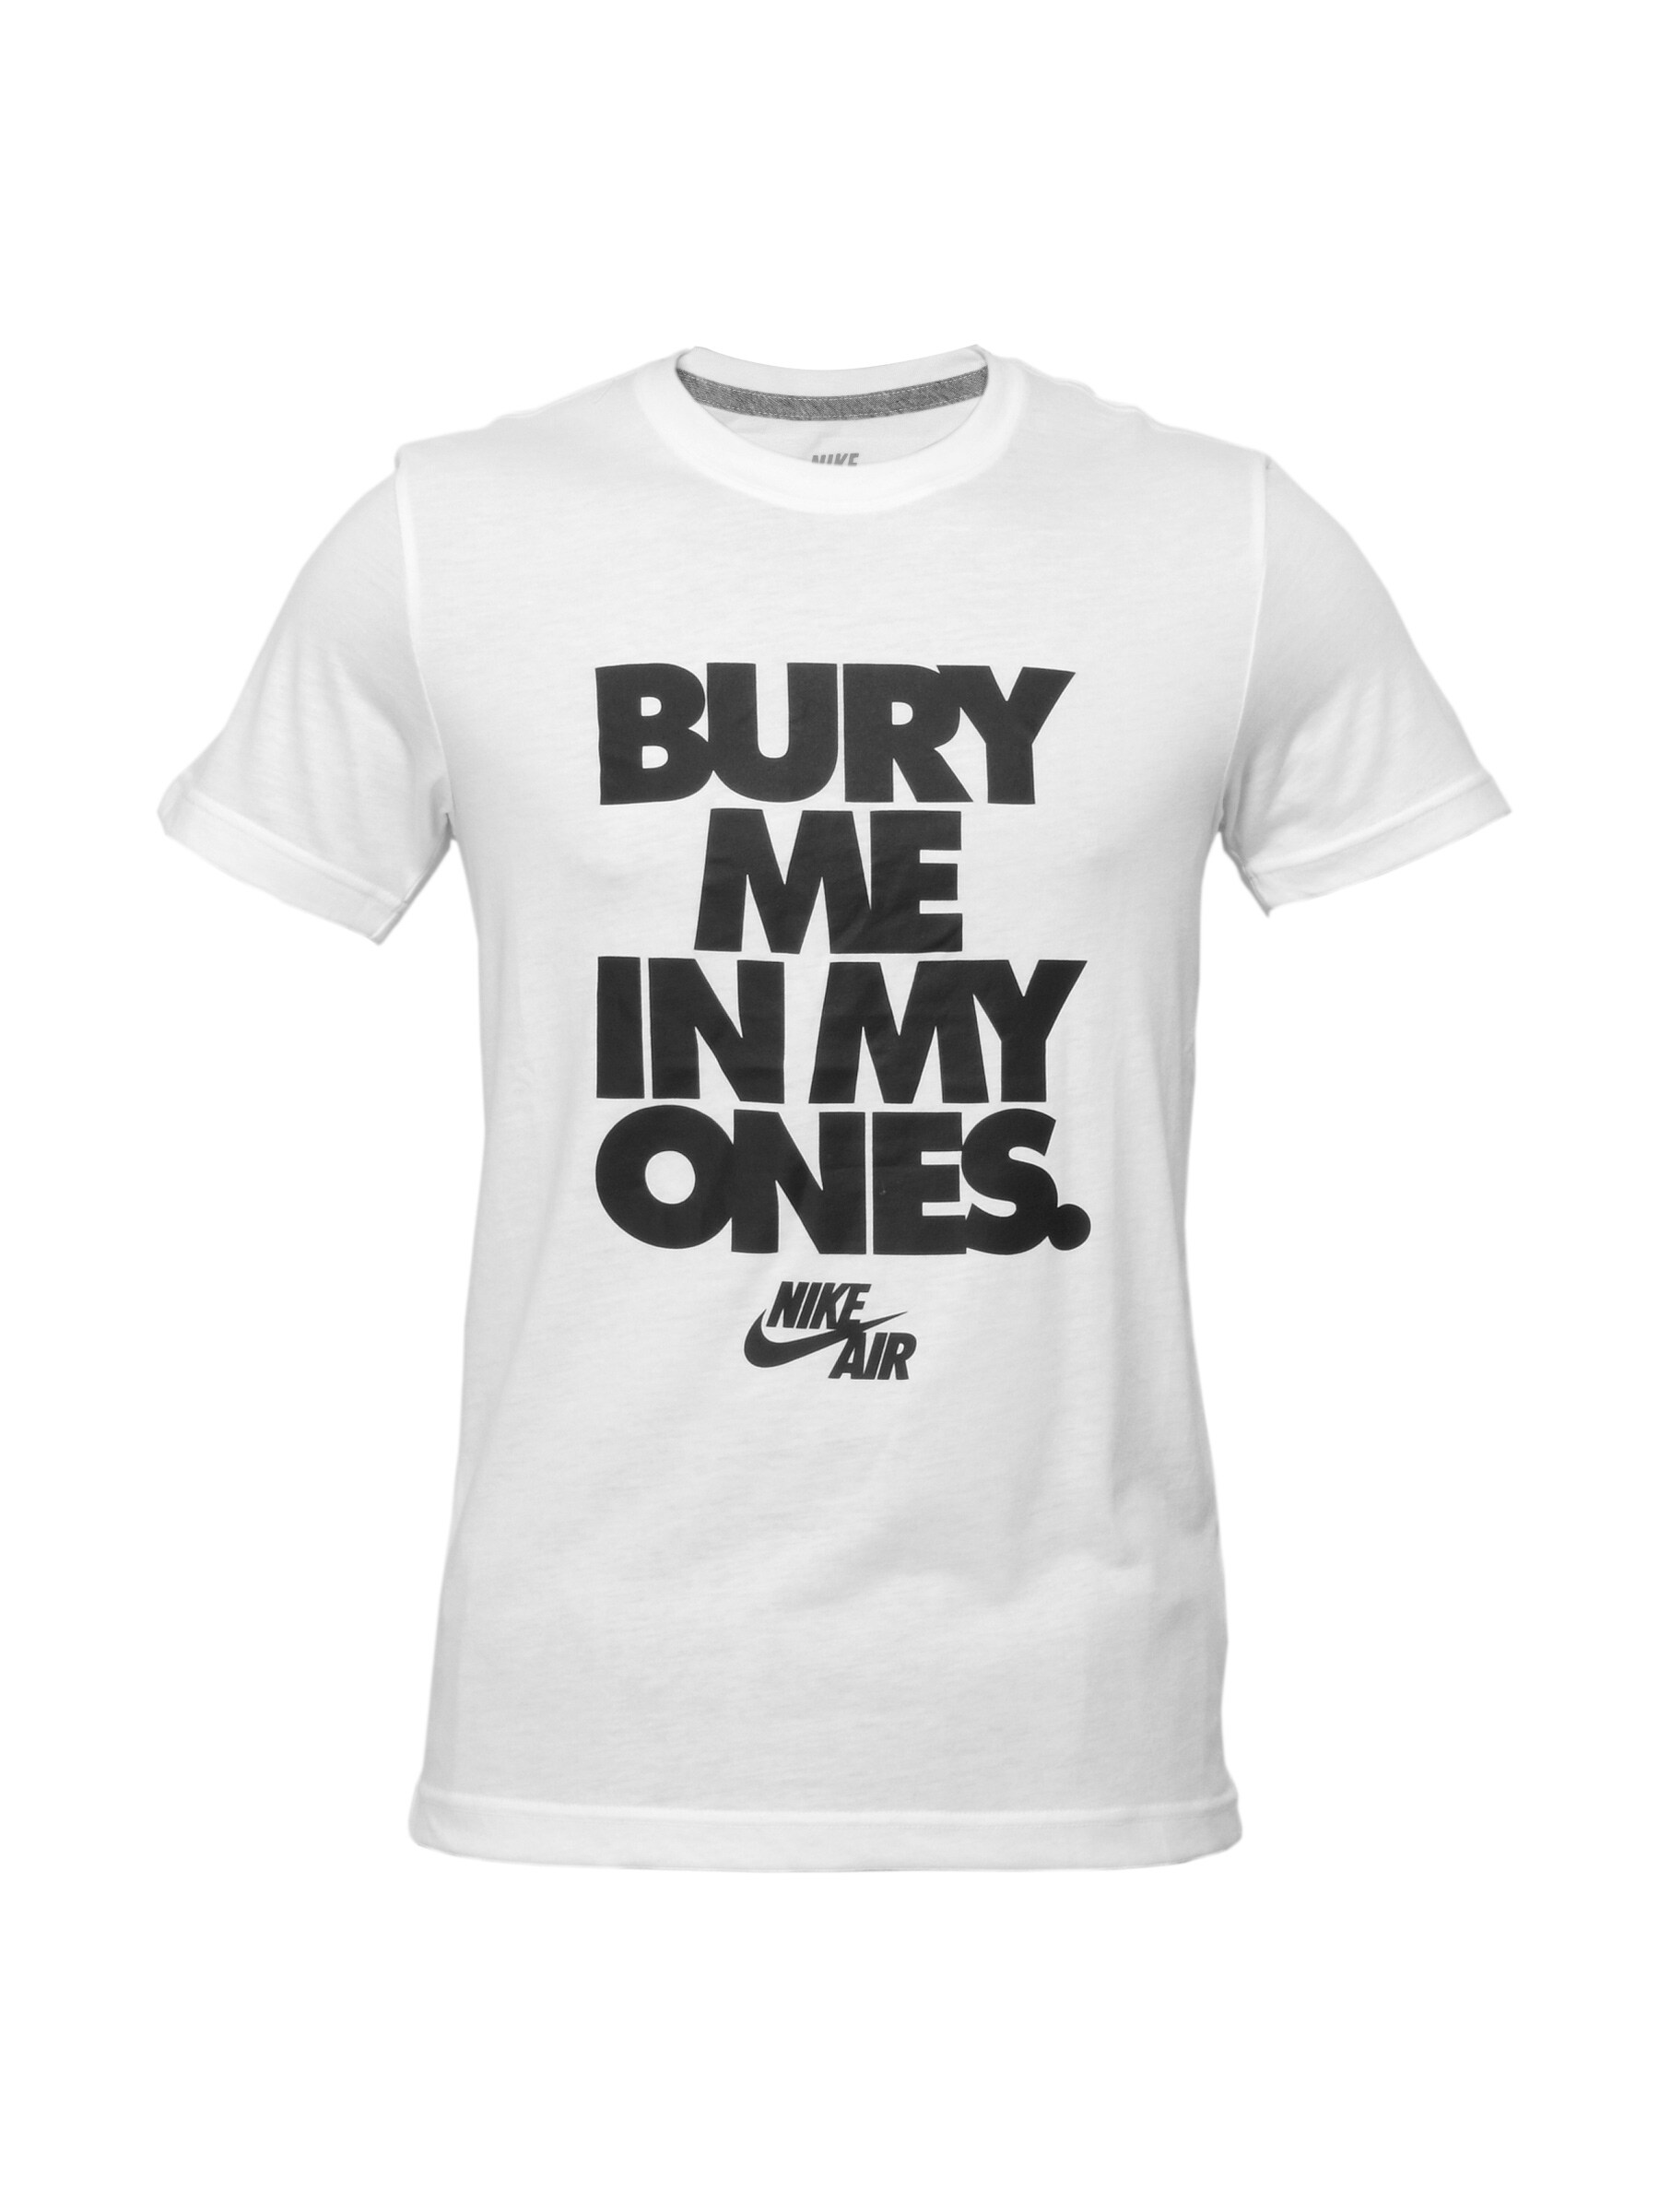 Nike Men Printed White T-shirt